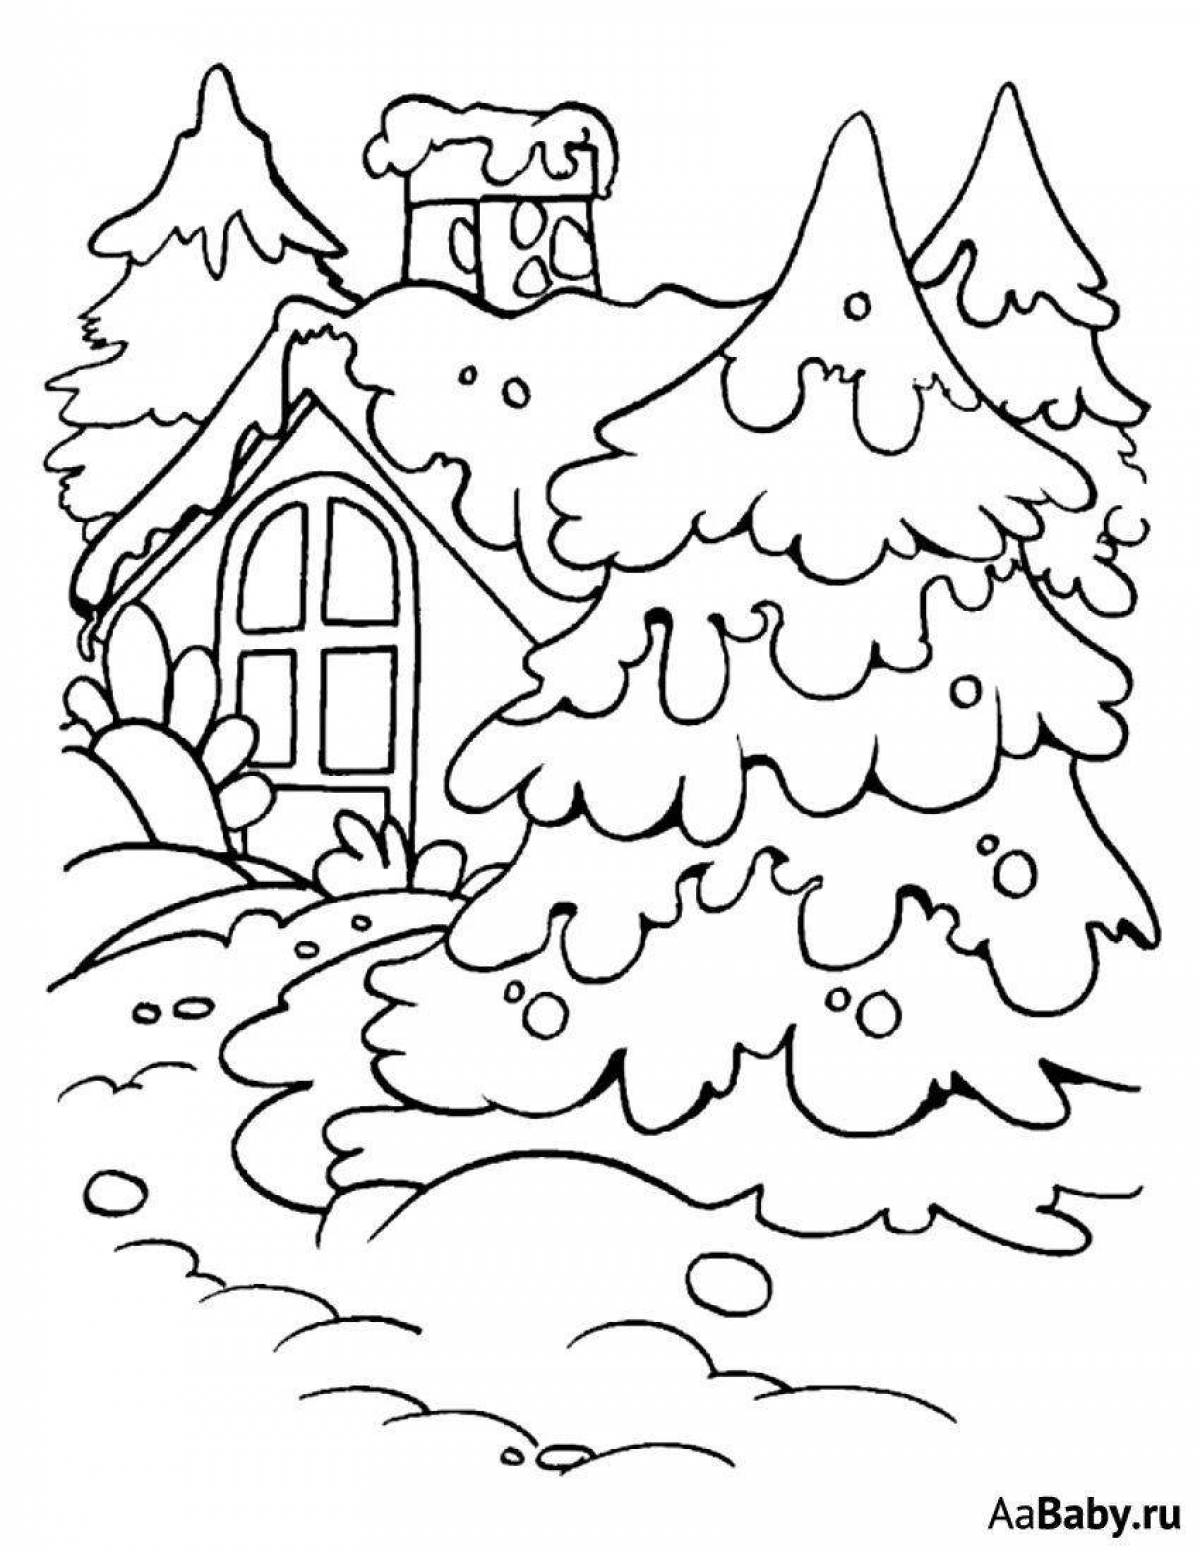 Увлекательная раскраска домик в лесу зимой